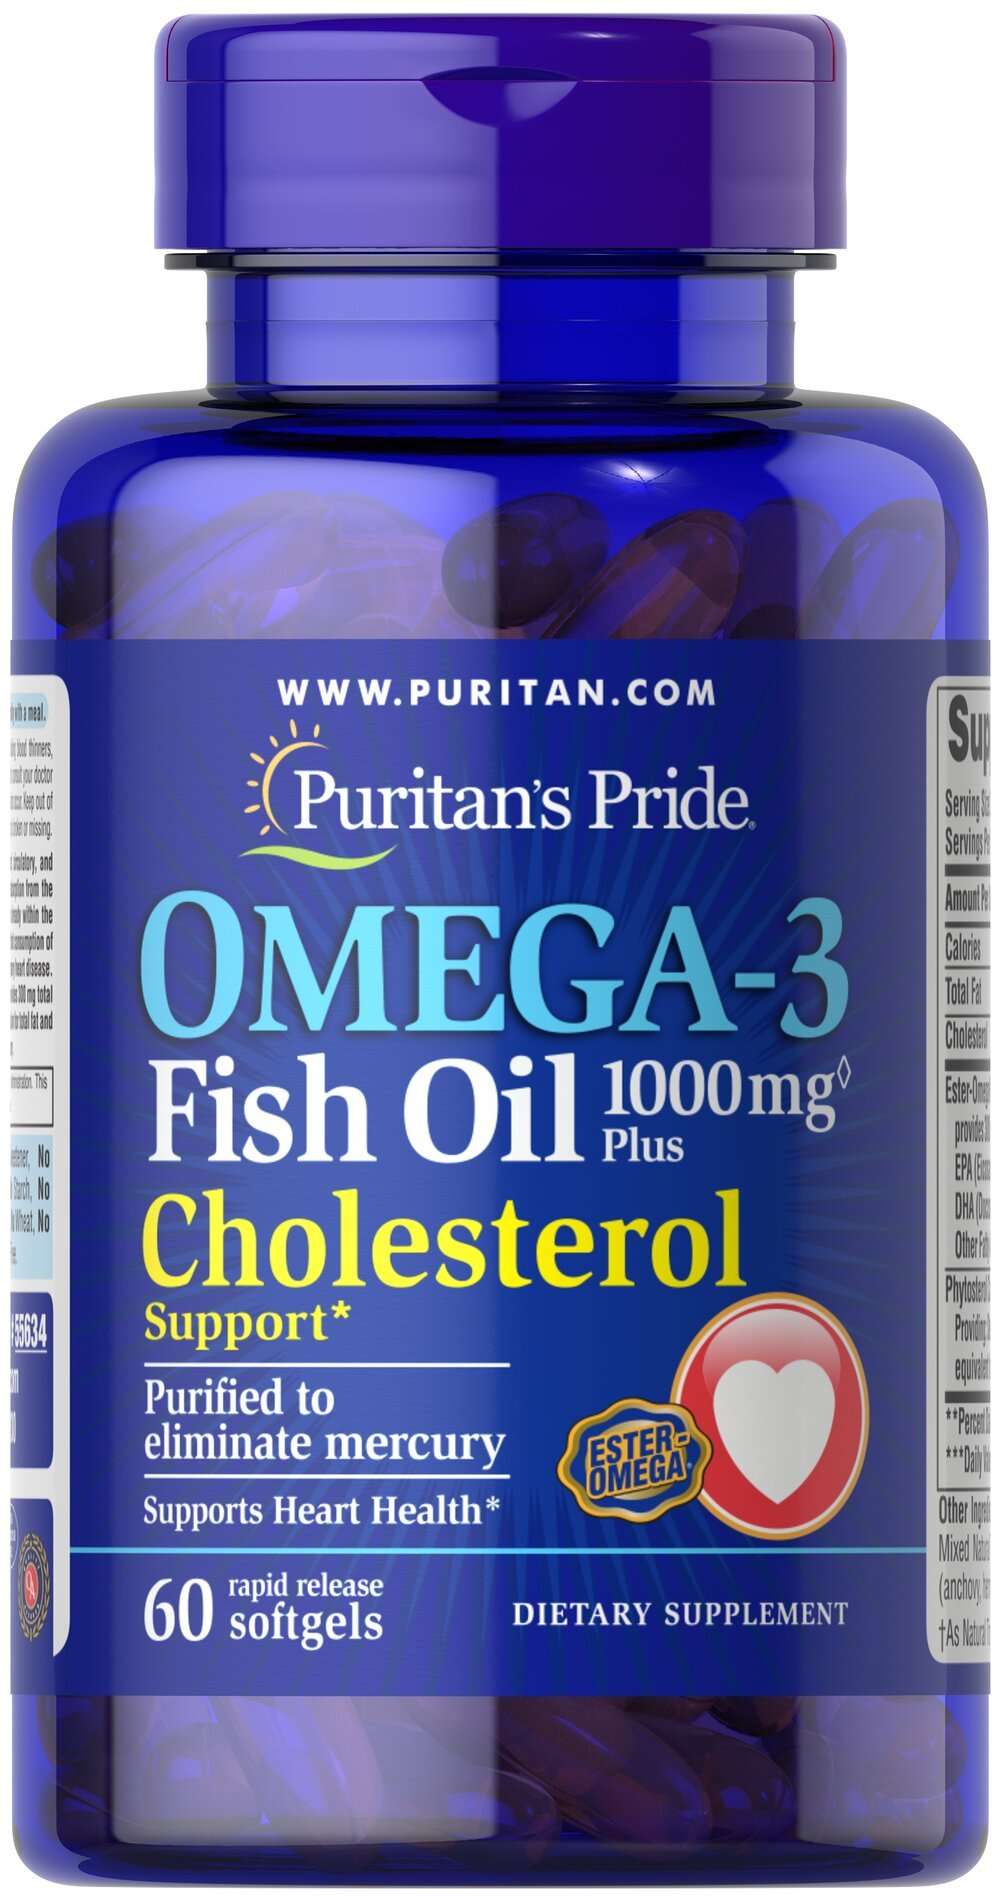 Omega 3 Products: Omega